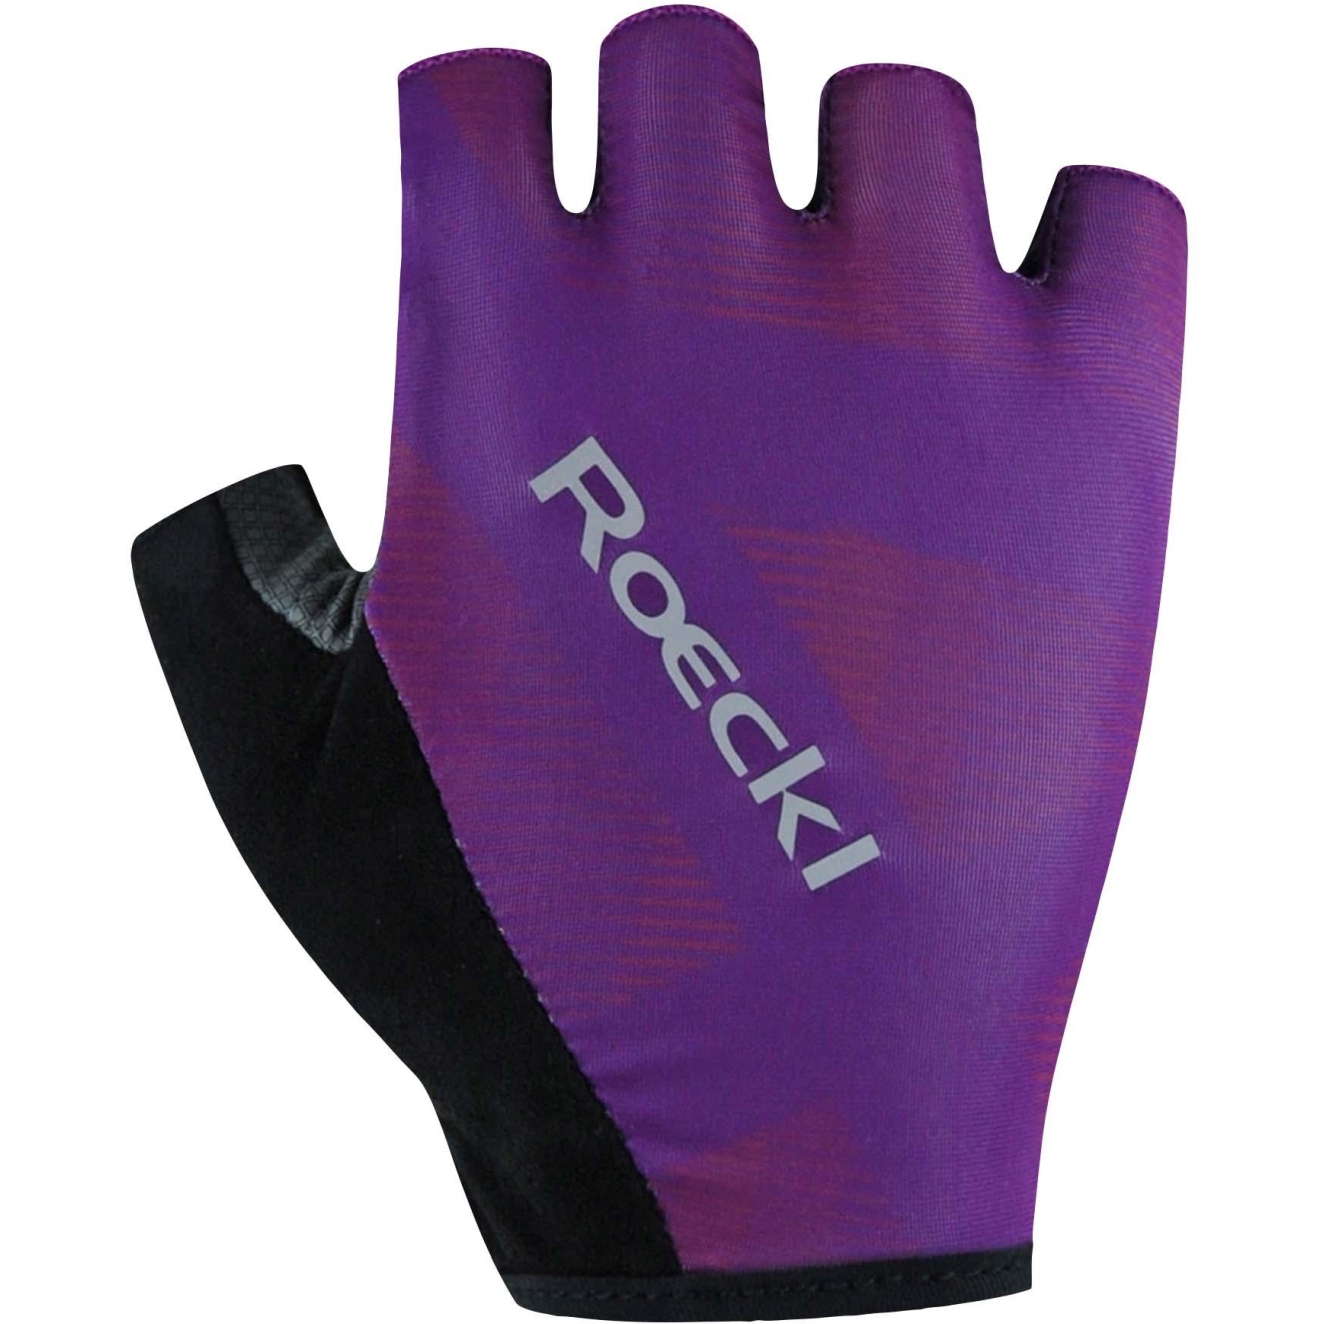 Produktbild von Roeckl Sports Busano Fahrradhandschuhe - purple grape 4960